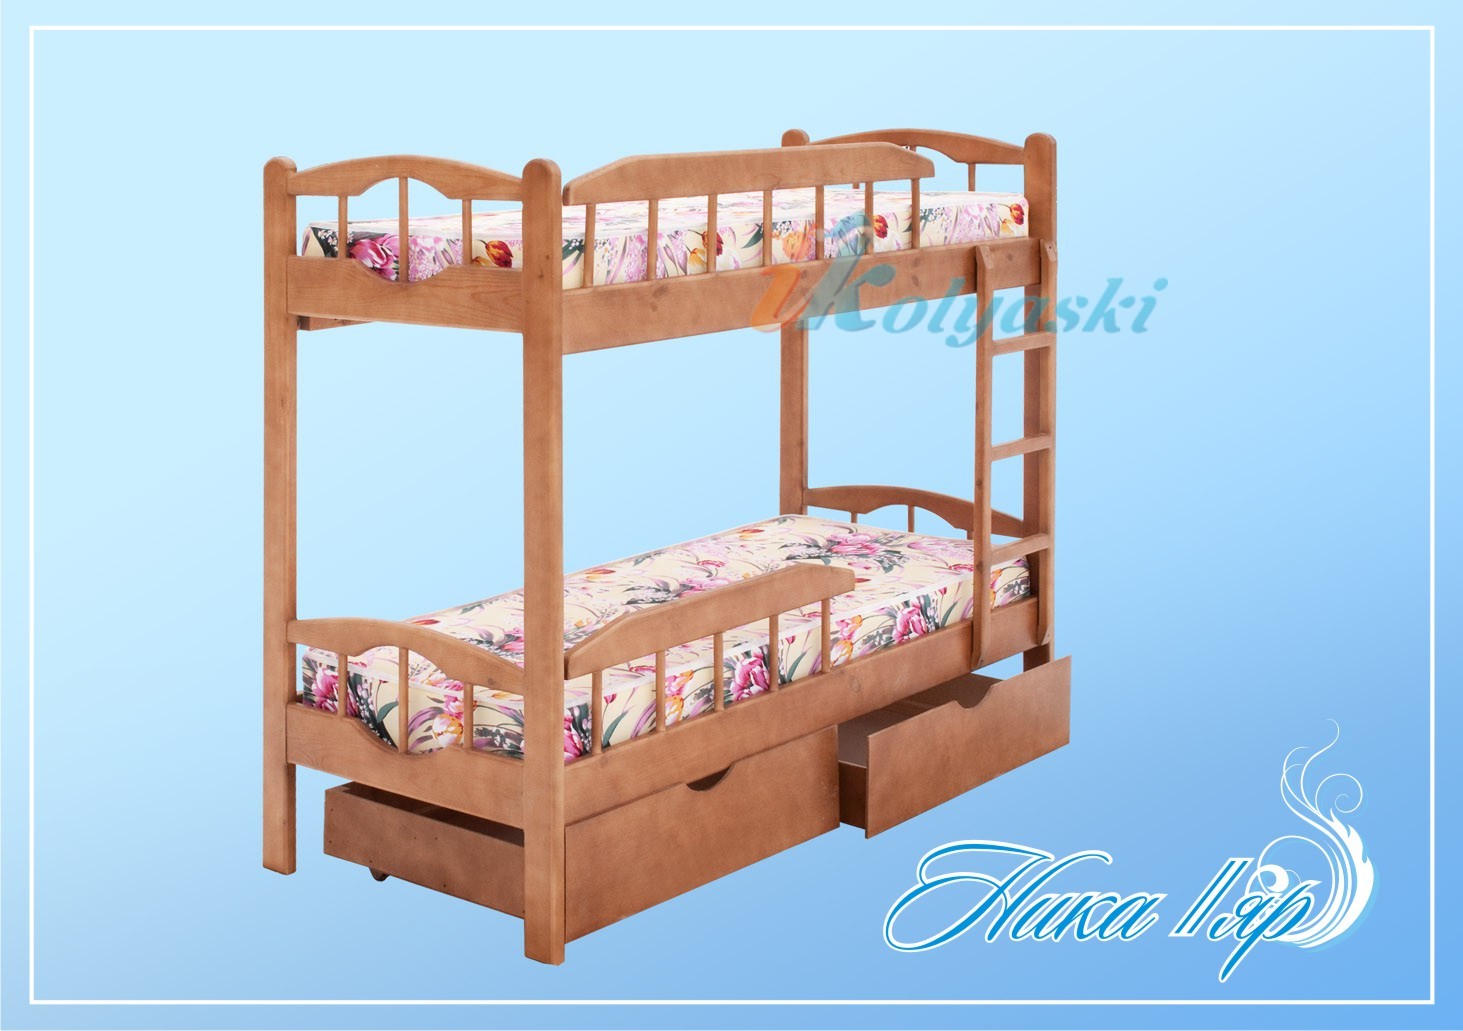 Детская двухъярусная кровать НИКА-2,   с 2-мя выкатными ящиками, подростковая двухъярусная кровать, двухъярусная кровать для взрослых, кровать двухъярусная из натурального дерева, Меб-ЕГРА, Россия, размеры и цвета разные.   двухъярусная кровать для близнецов, двухъярусная кровать для двойни, двухъярусные детские кровати, детский кровать двухъярусный, купить двухъярусную кровать, двухъярусная кровать для детей, детская двухъярусная кровать, двухъярусные детские кровати